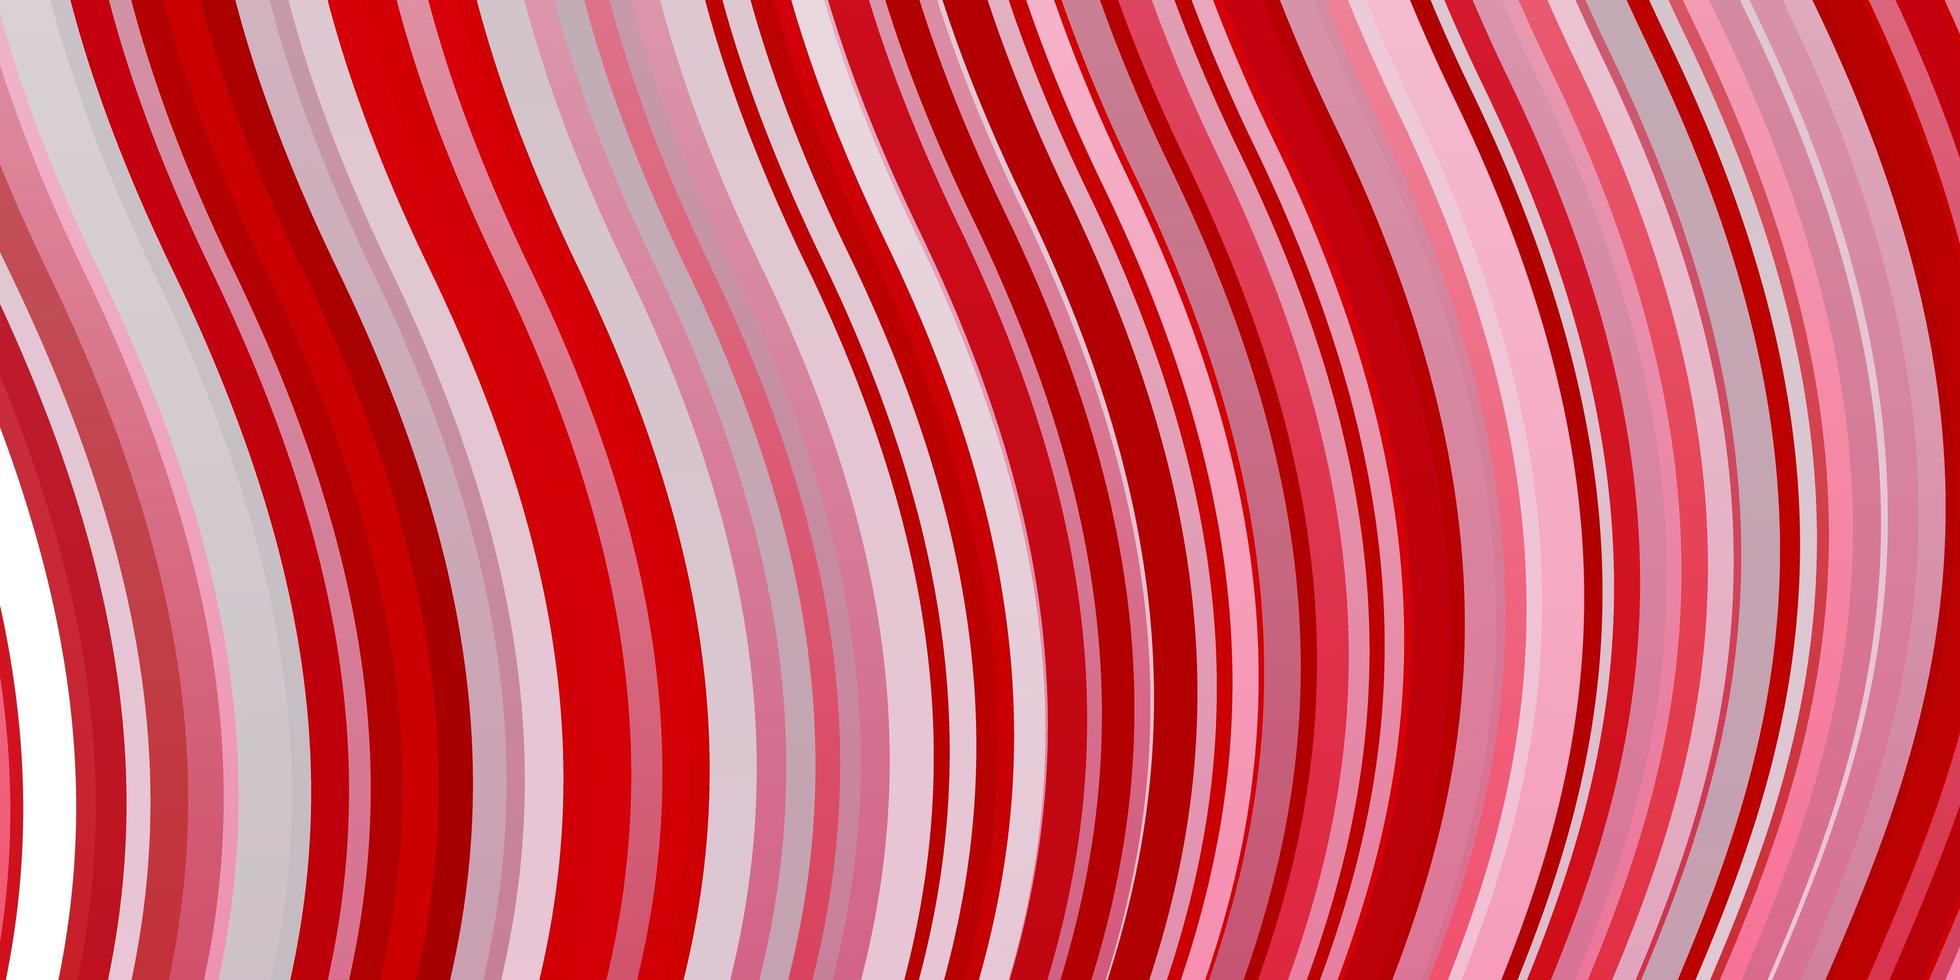 fundo vector vermelho claro com linhas dobradas.